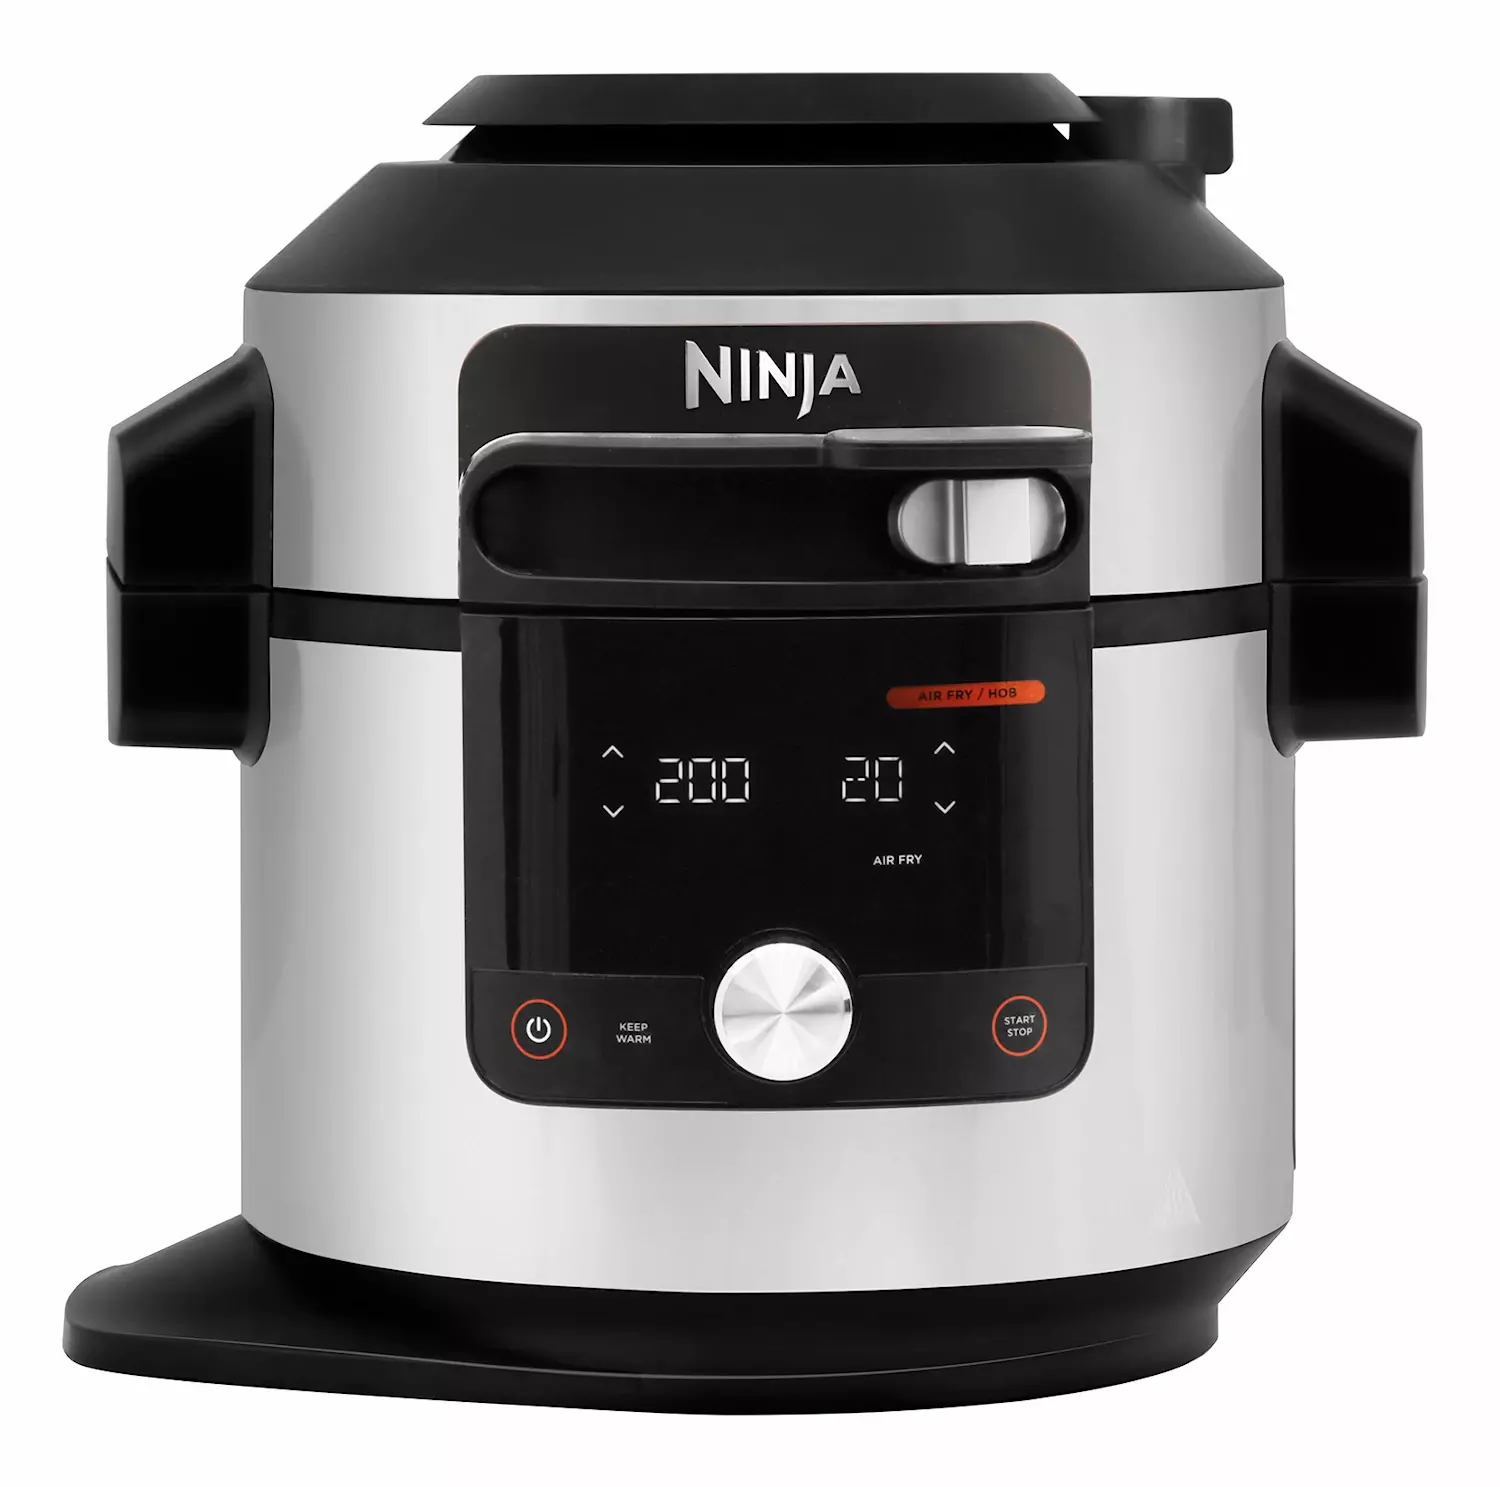 Ninja Foodi 14-i-1 multicooker